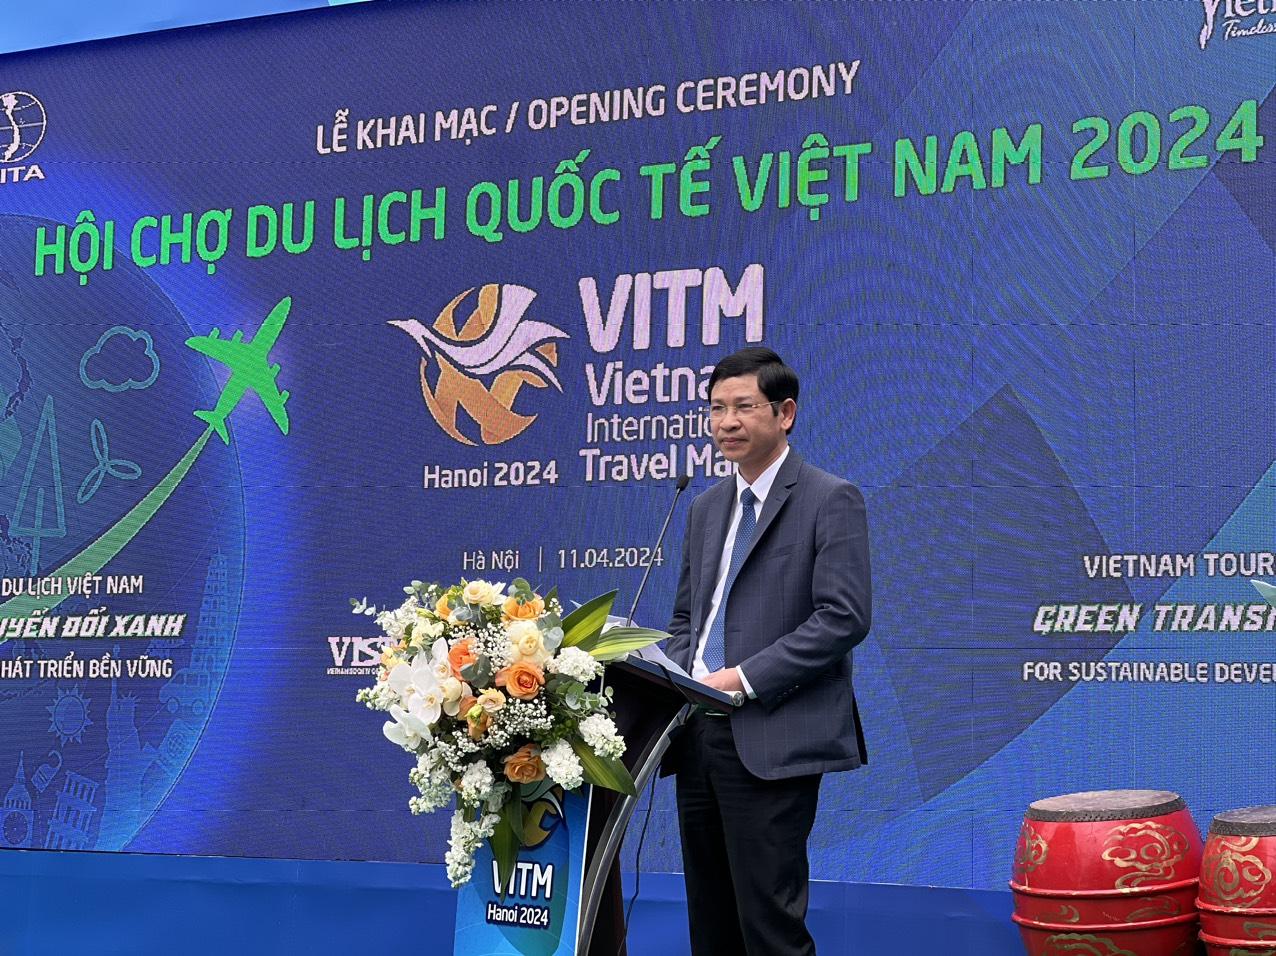 Thứ trưởng Bộ VHTTD Hồ An Phong phát biểu khai mạc hội chợ.